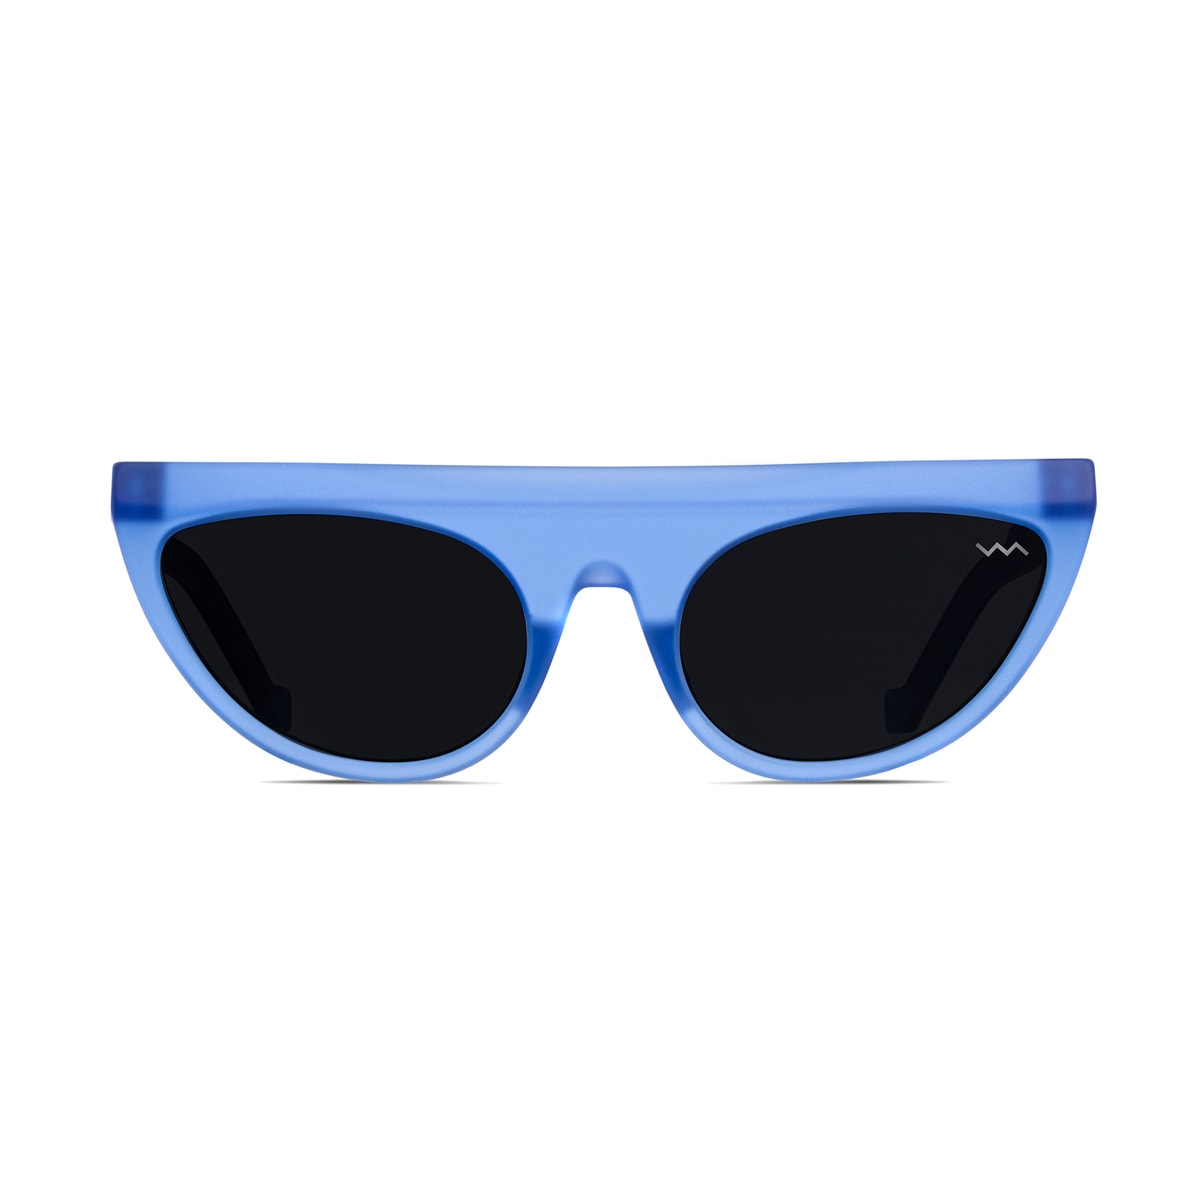 Bl0027 Black Label Cristal Blue Matte Sunglasses